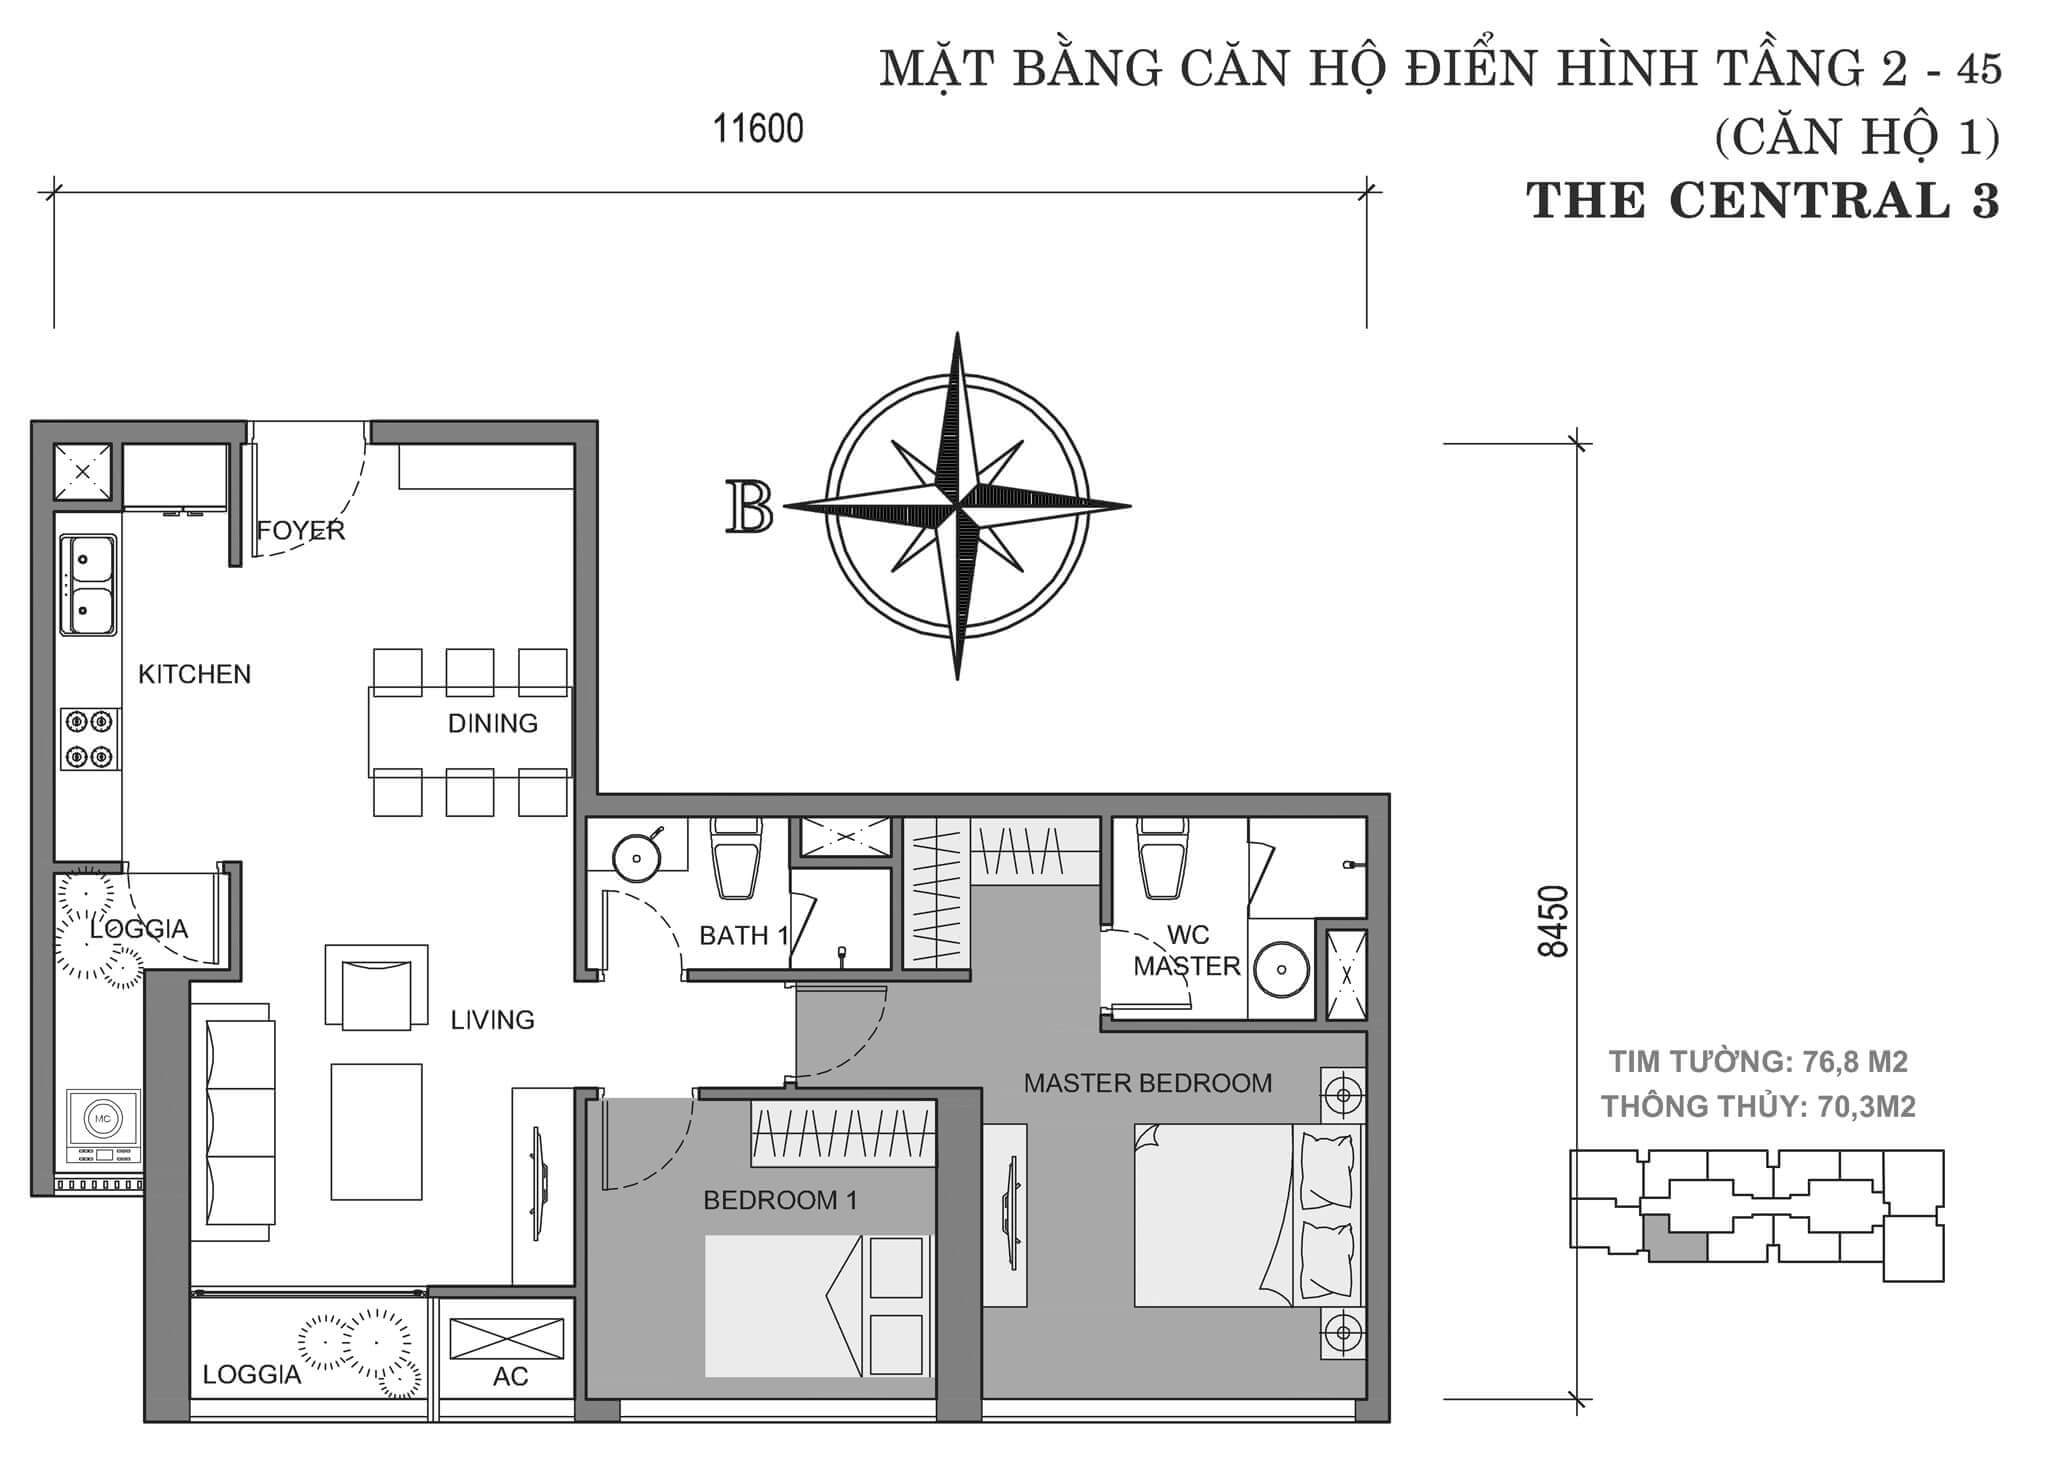 layout căn hộ số 1 tòa Central 3 tầng 2-45  